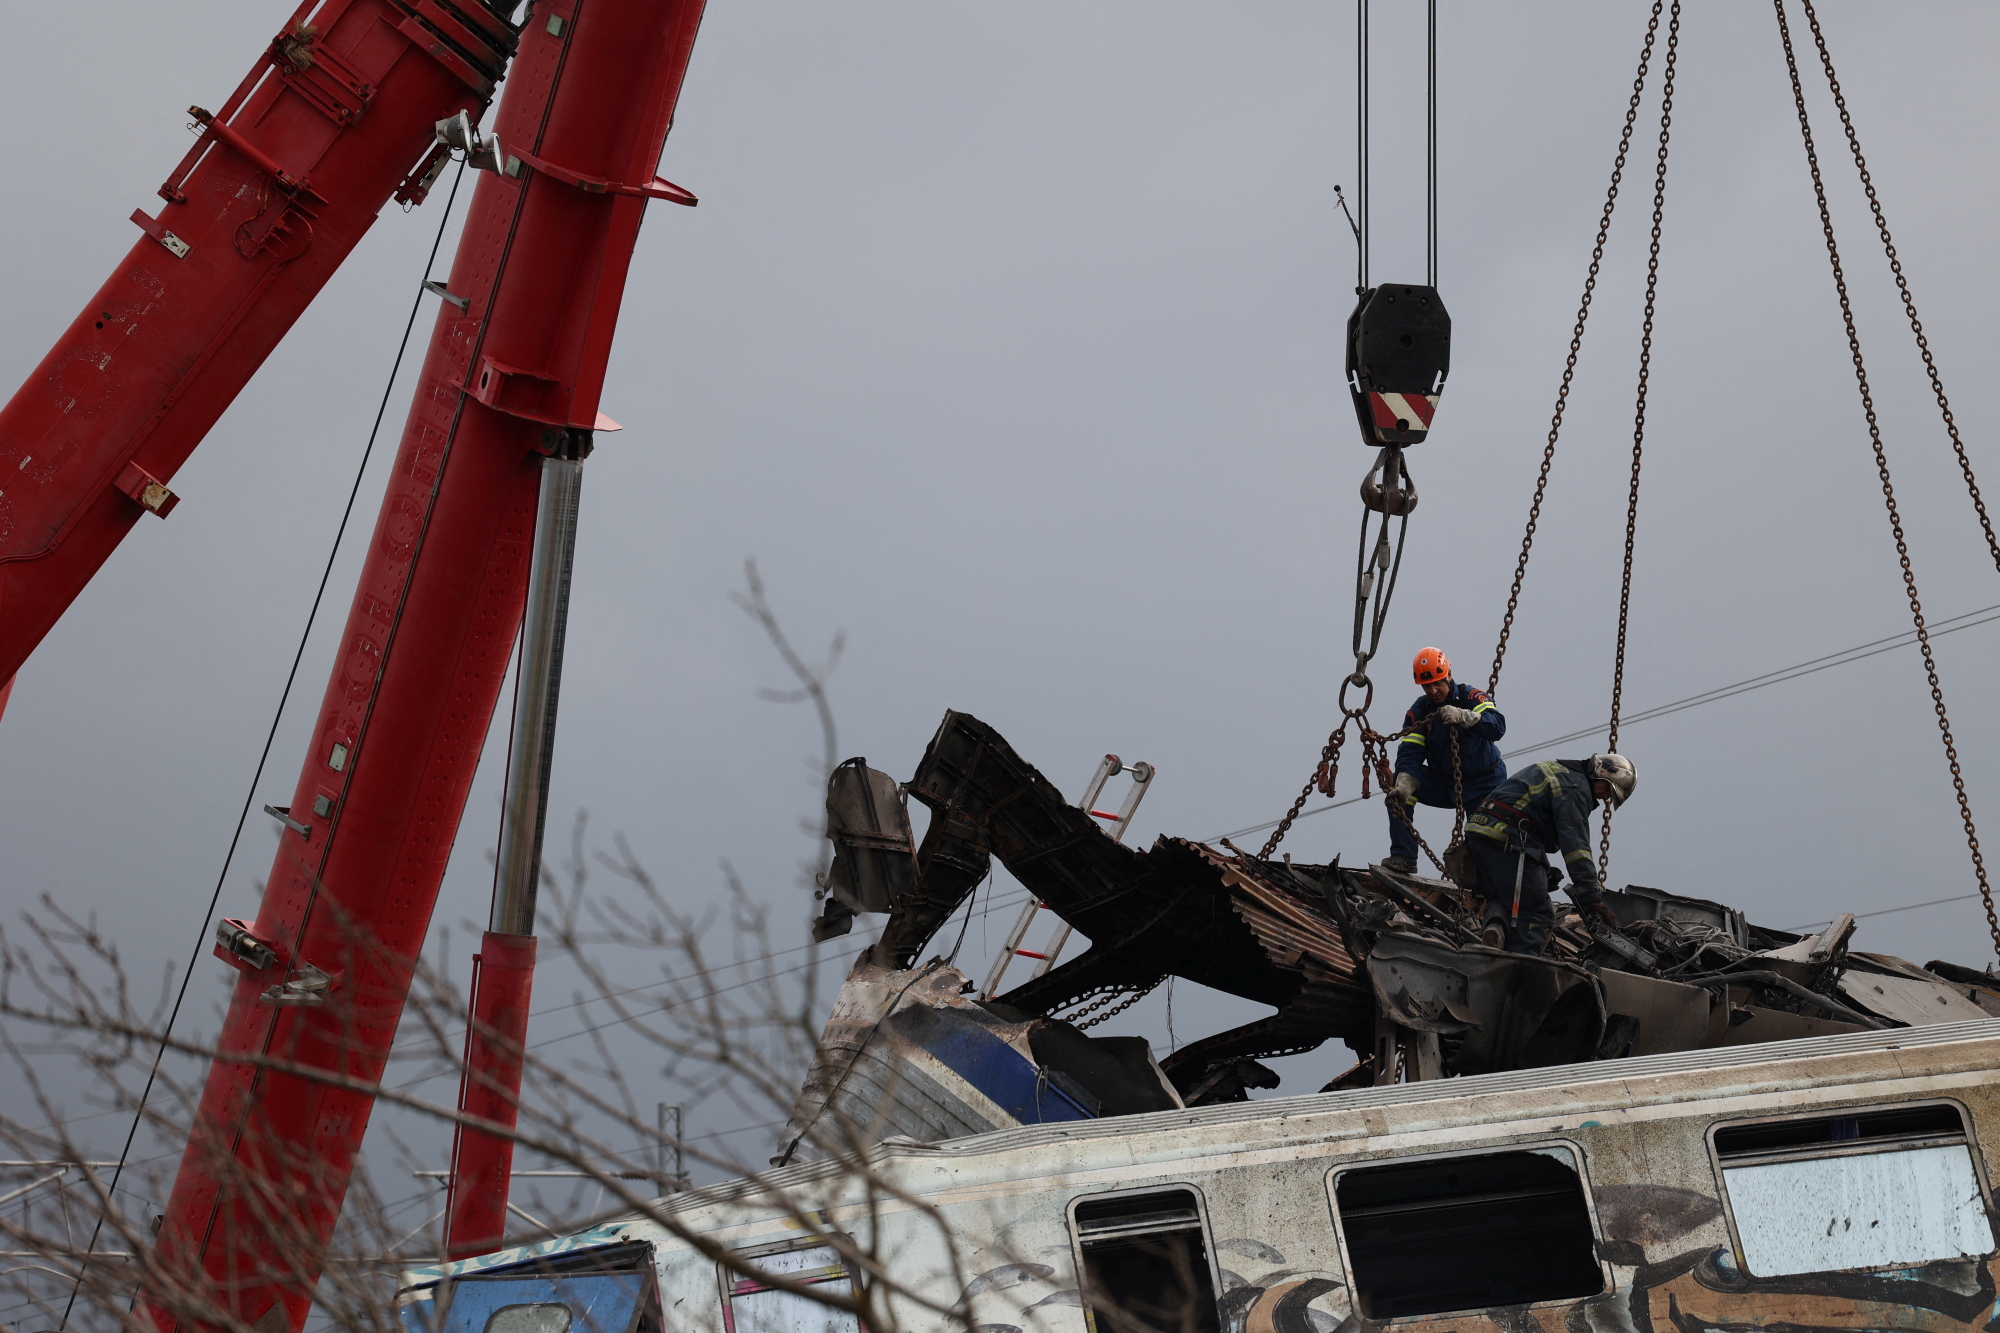 Σύγκρουση τρένων στα Τέμπη: Από την Αμαλιάδα ένας από τους μηχανοδηγούς που ανασύρθηκε νεκρός